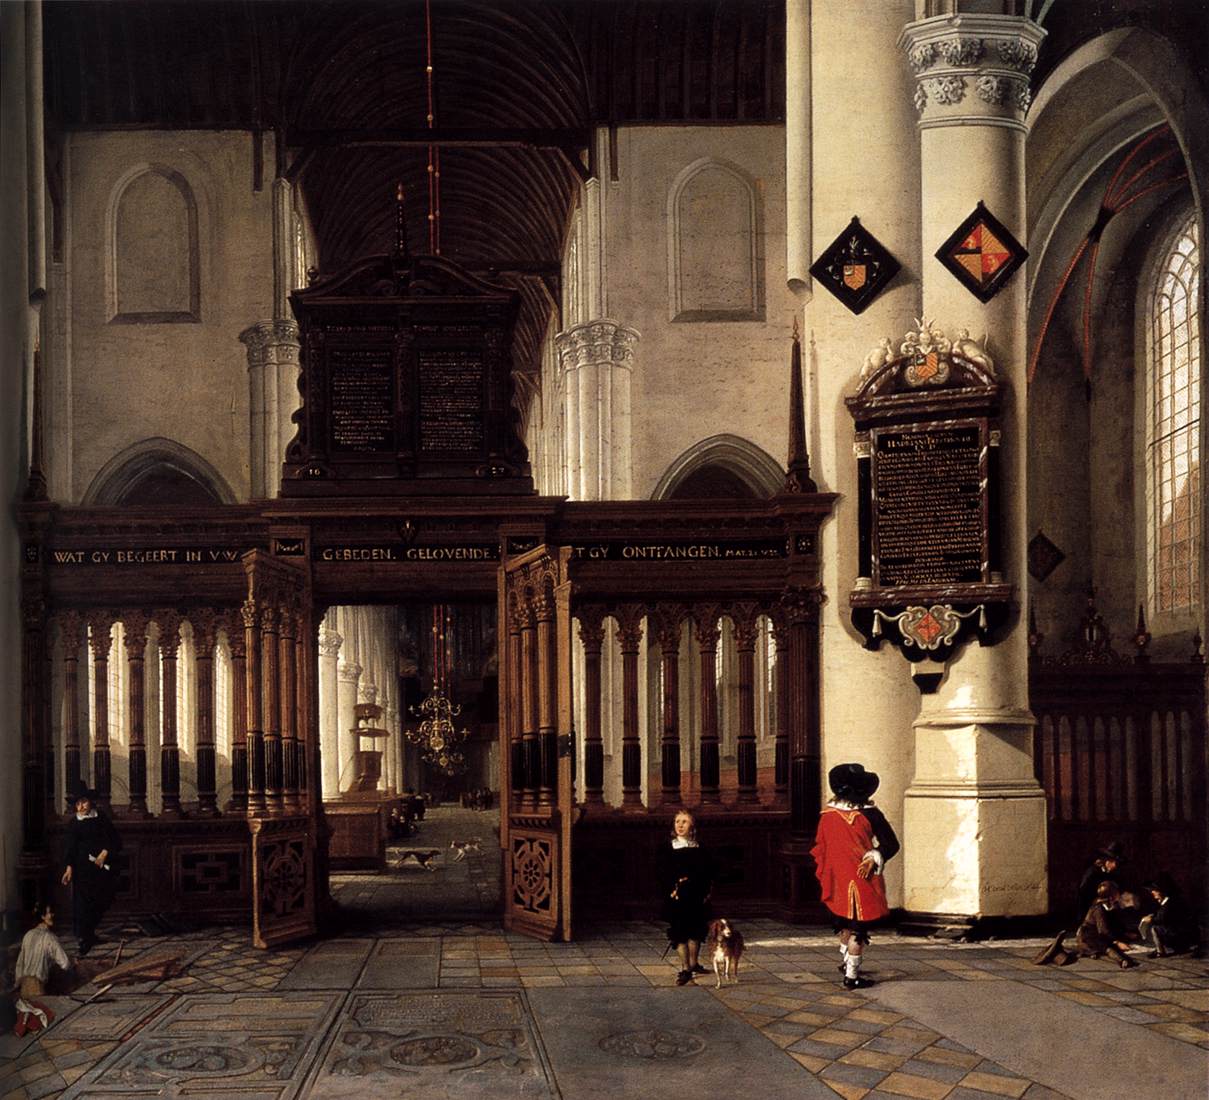 Inside Nieuwe Kerk, Delft, с памятным столом Адриана Тединга Ван Беркхаута